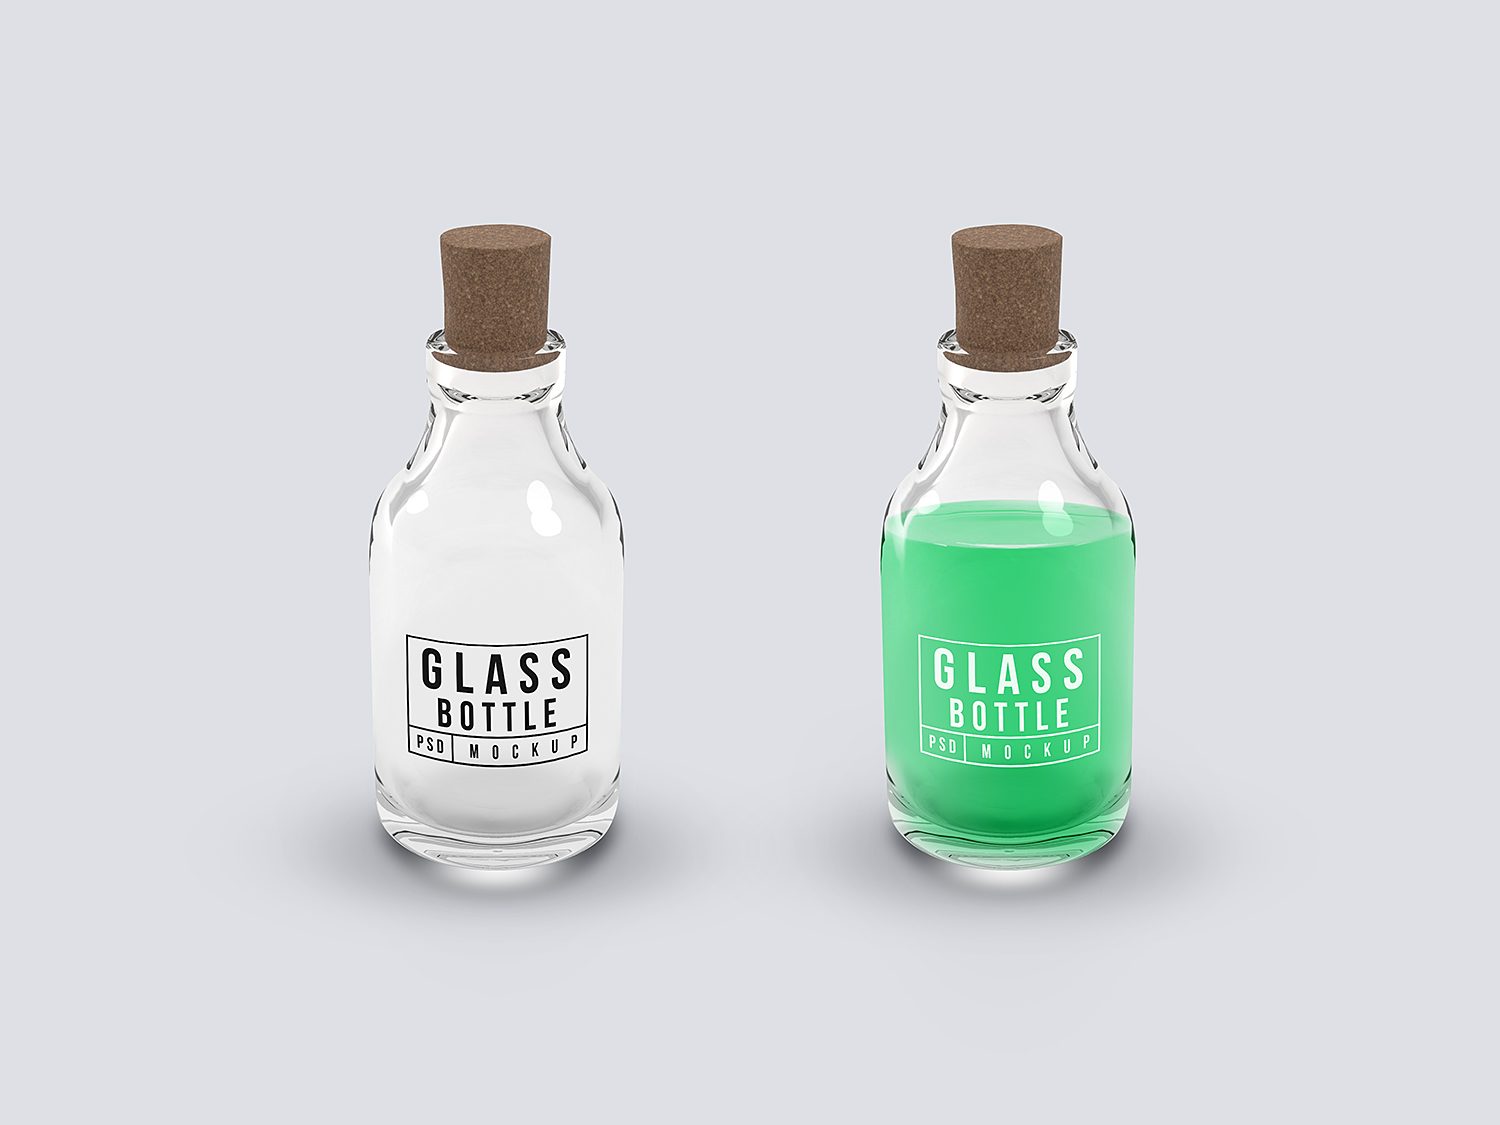 Veraangenamen eiland onderzeeër Free Glass Bottle PSD Mockup - Free Mockup World